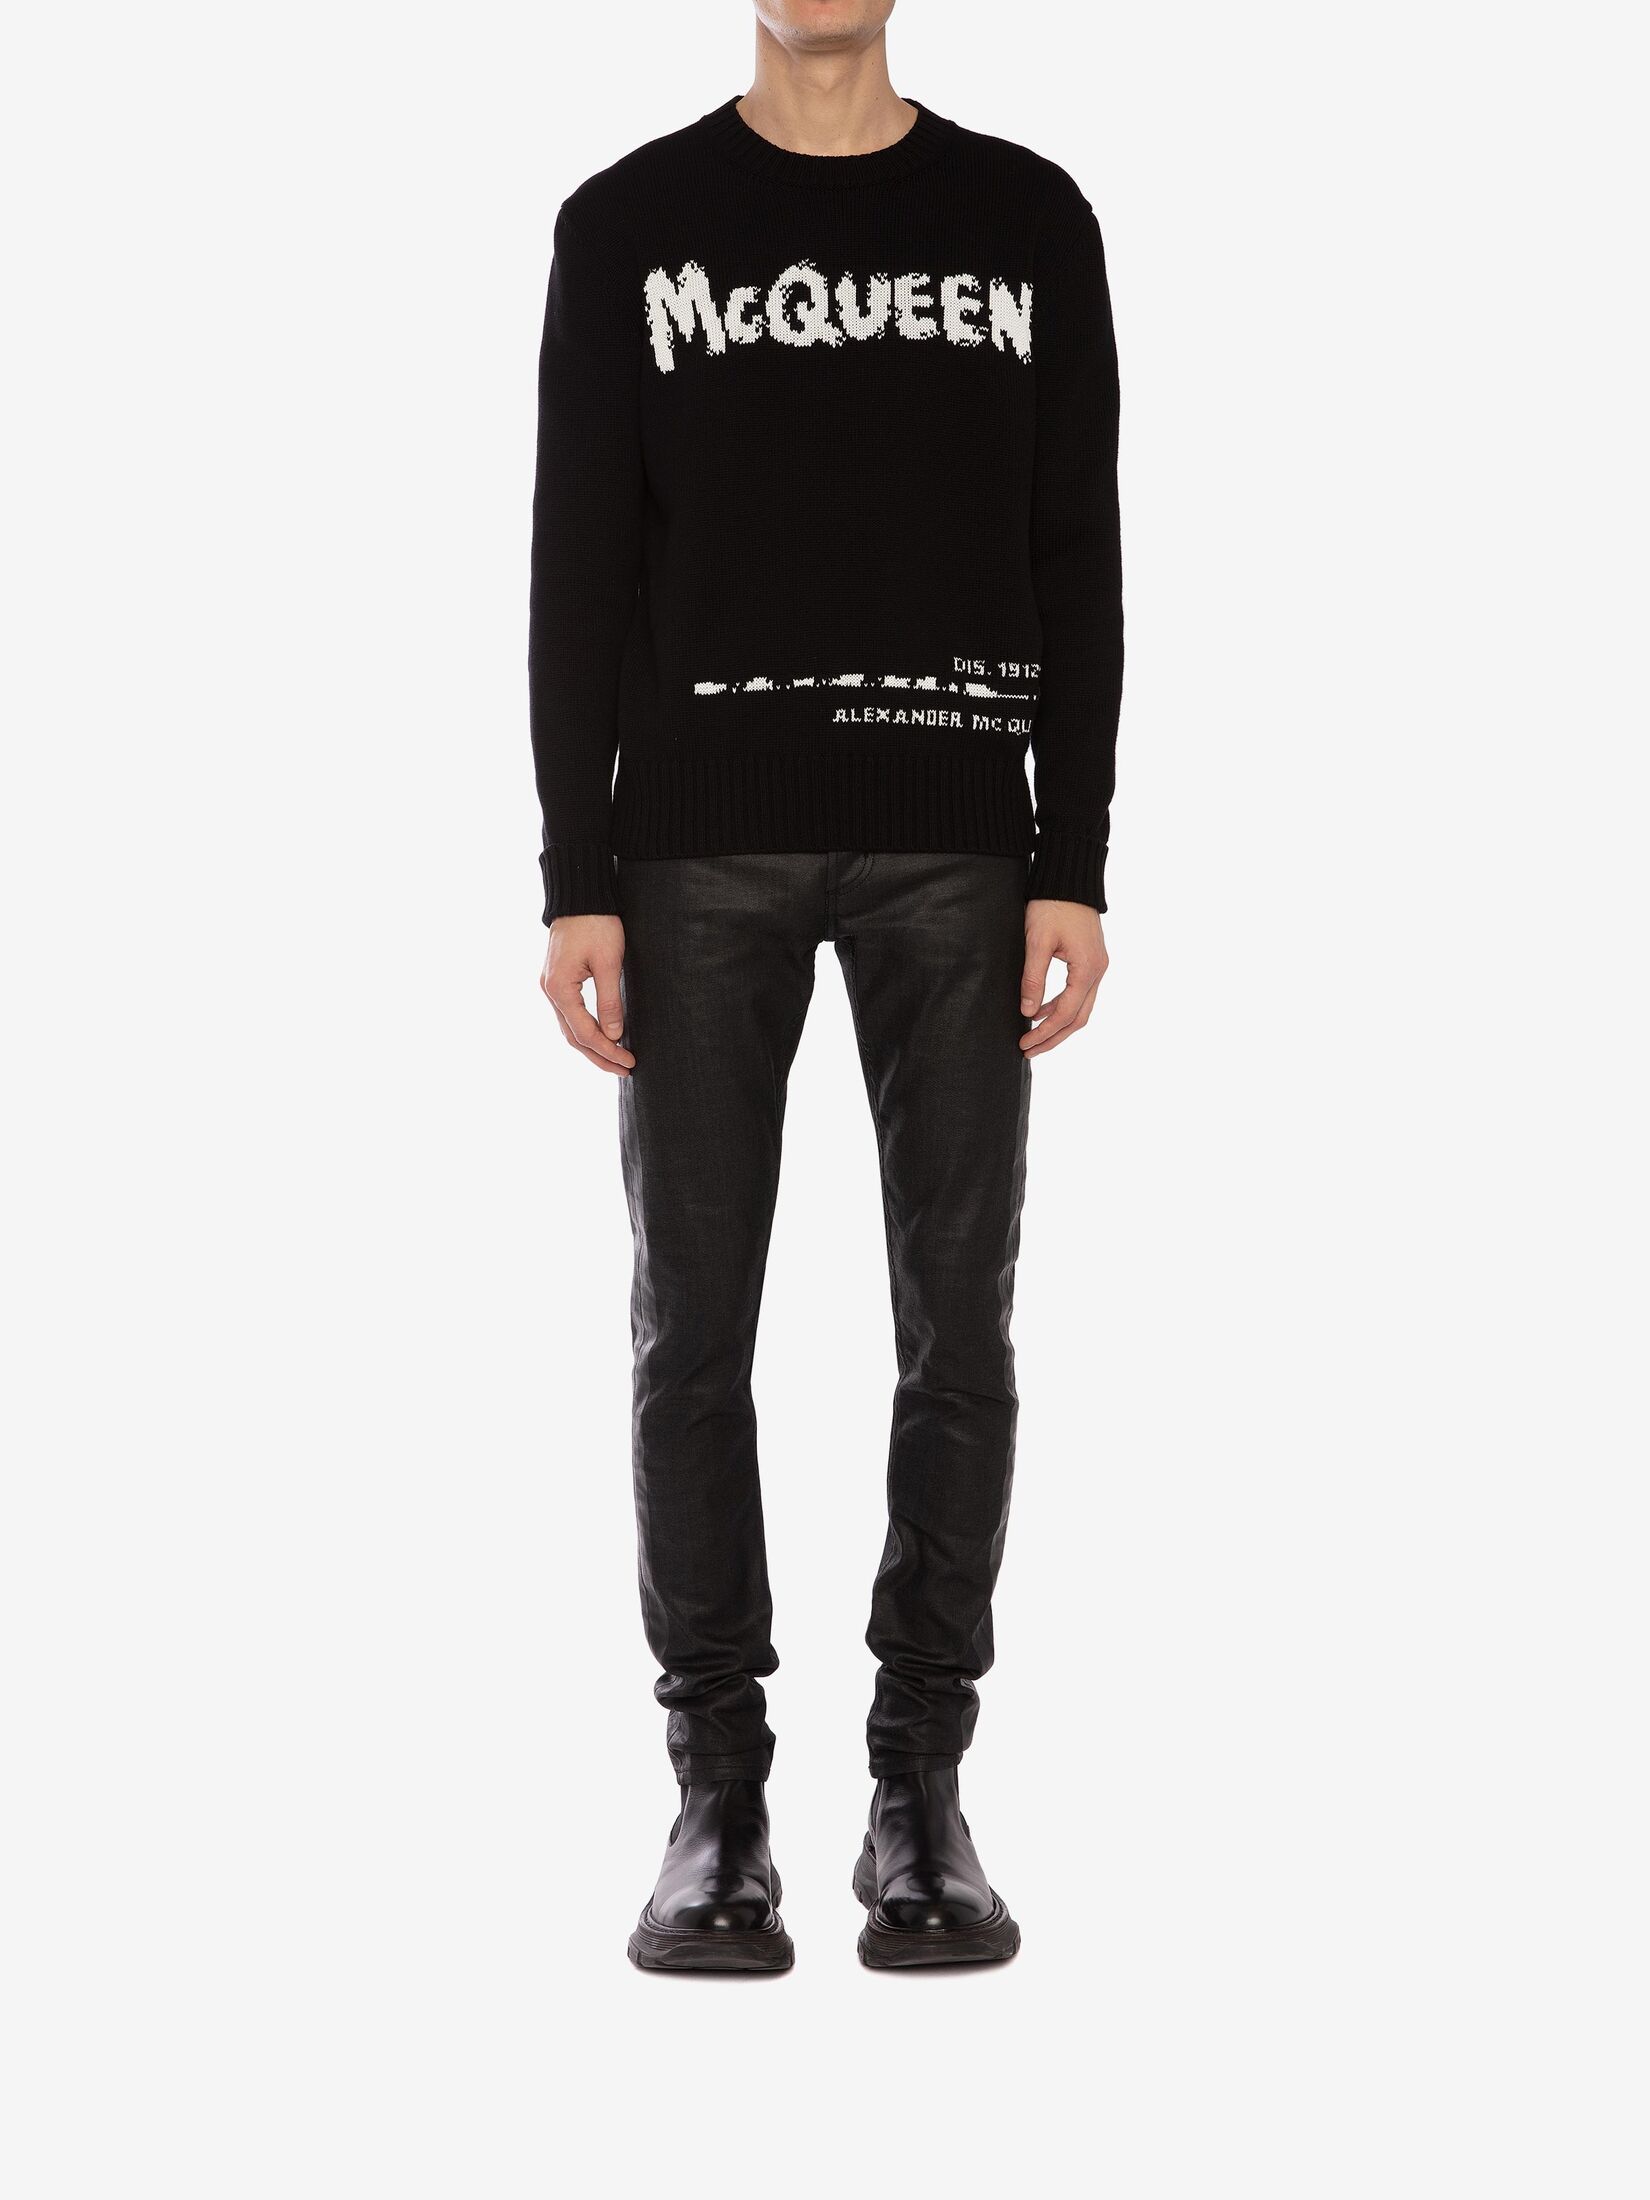 McQueen Graffiti Crew Neck Sweater